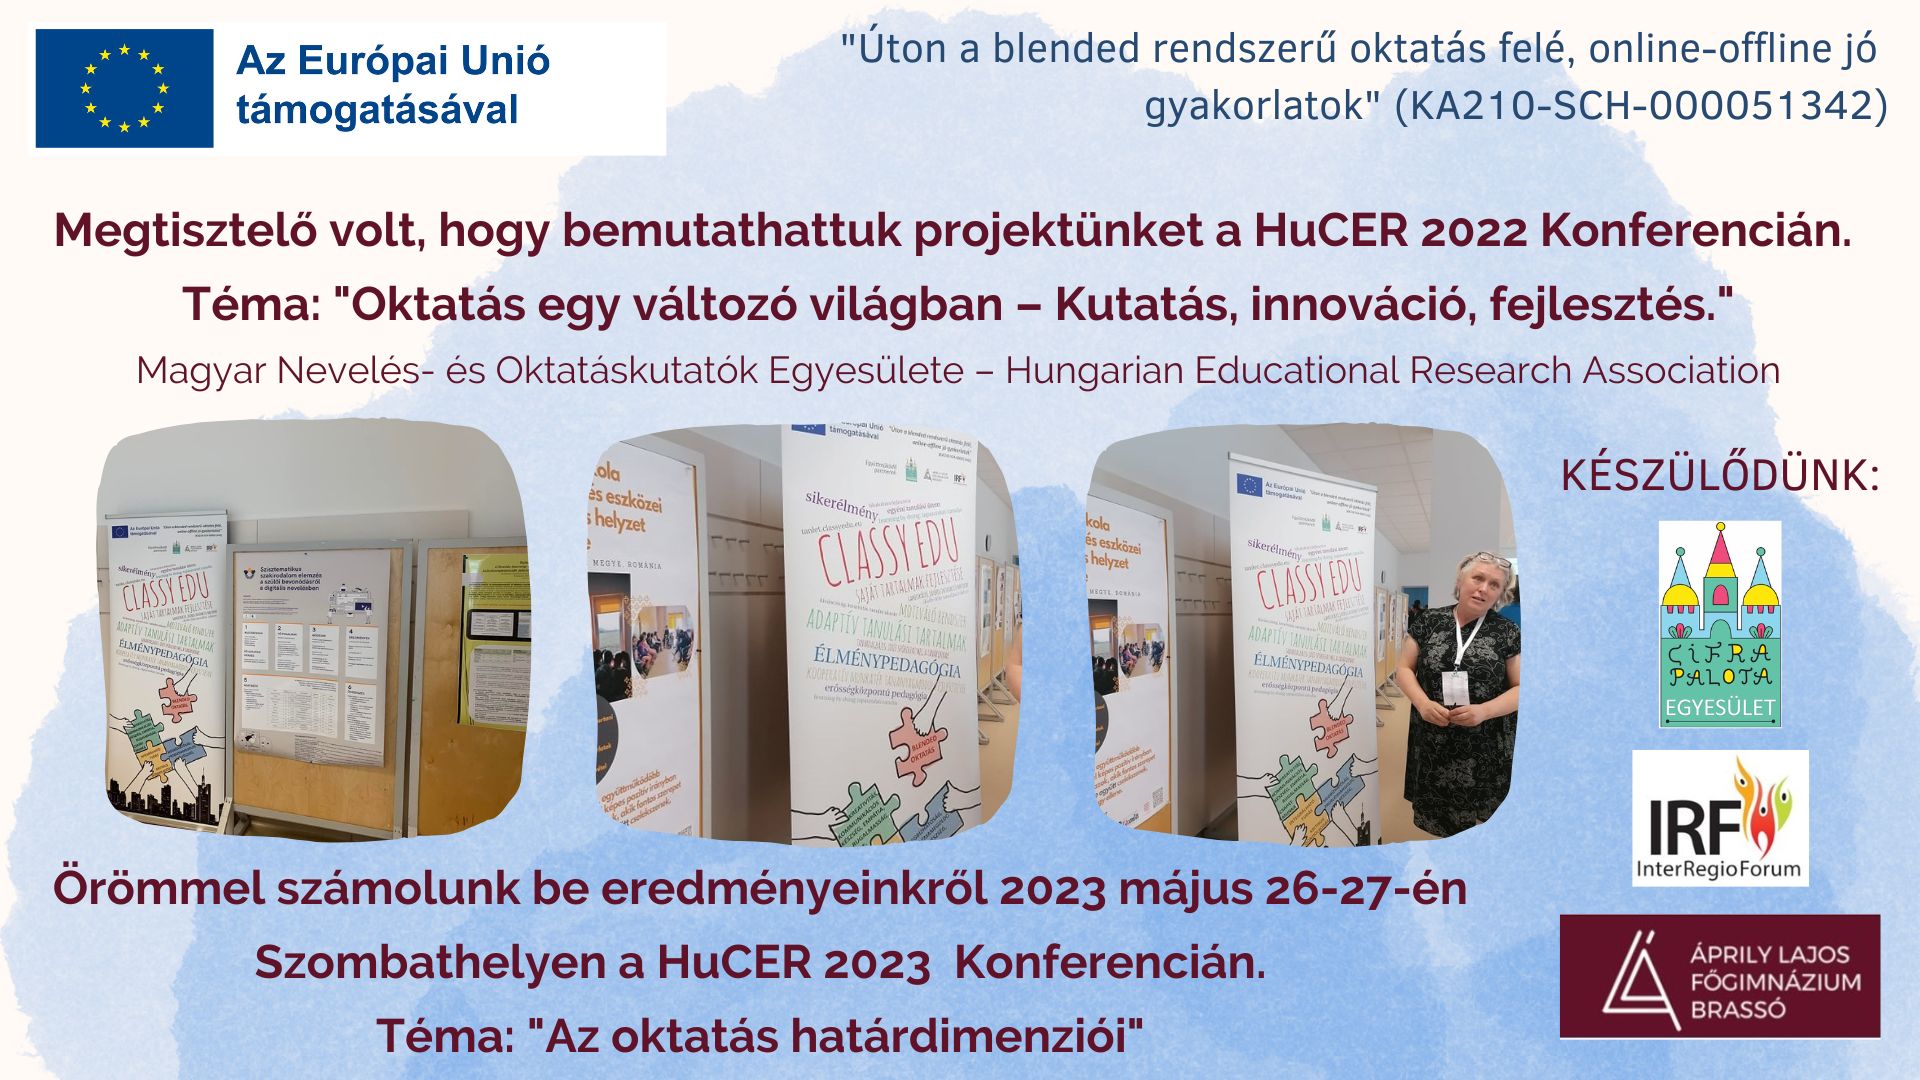 Megtisztelő volt, hogy bemutathattuk projektünket a HuCER 2023 Konferencián. Téma: Oktatás egy változó világban - kutatás, innováció, fejlesztés. Magyar Nevelés- és Oktatáskutatók Egyesülete - Hungarian Educational Research Association. Örömmel számolunk be eredményeinkről 2023 május 26-27-én Szombathelyen a HuCER 2023 Konferencián. Téma: "Az oktatás határdimenziói" "Úton a blended rendszerű oktatás felé, online-offline jó gyakorlatok" KA210-SCH-000051342 Az Európai Unió támogatásával.